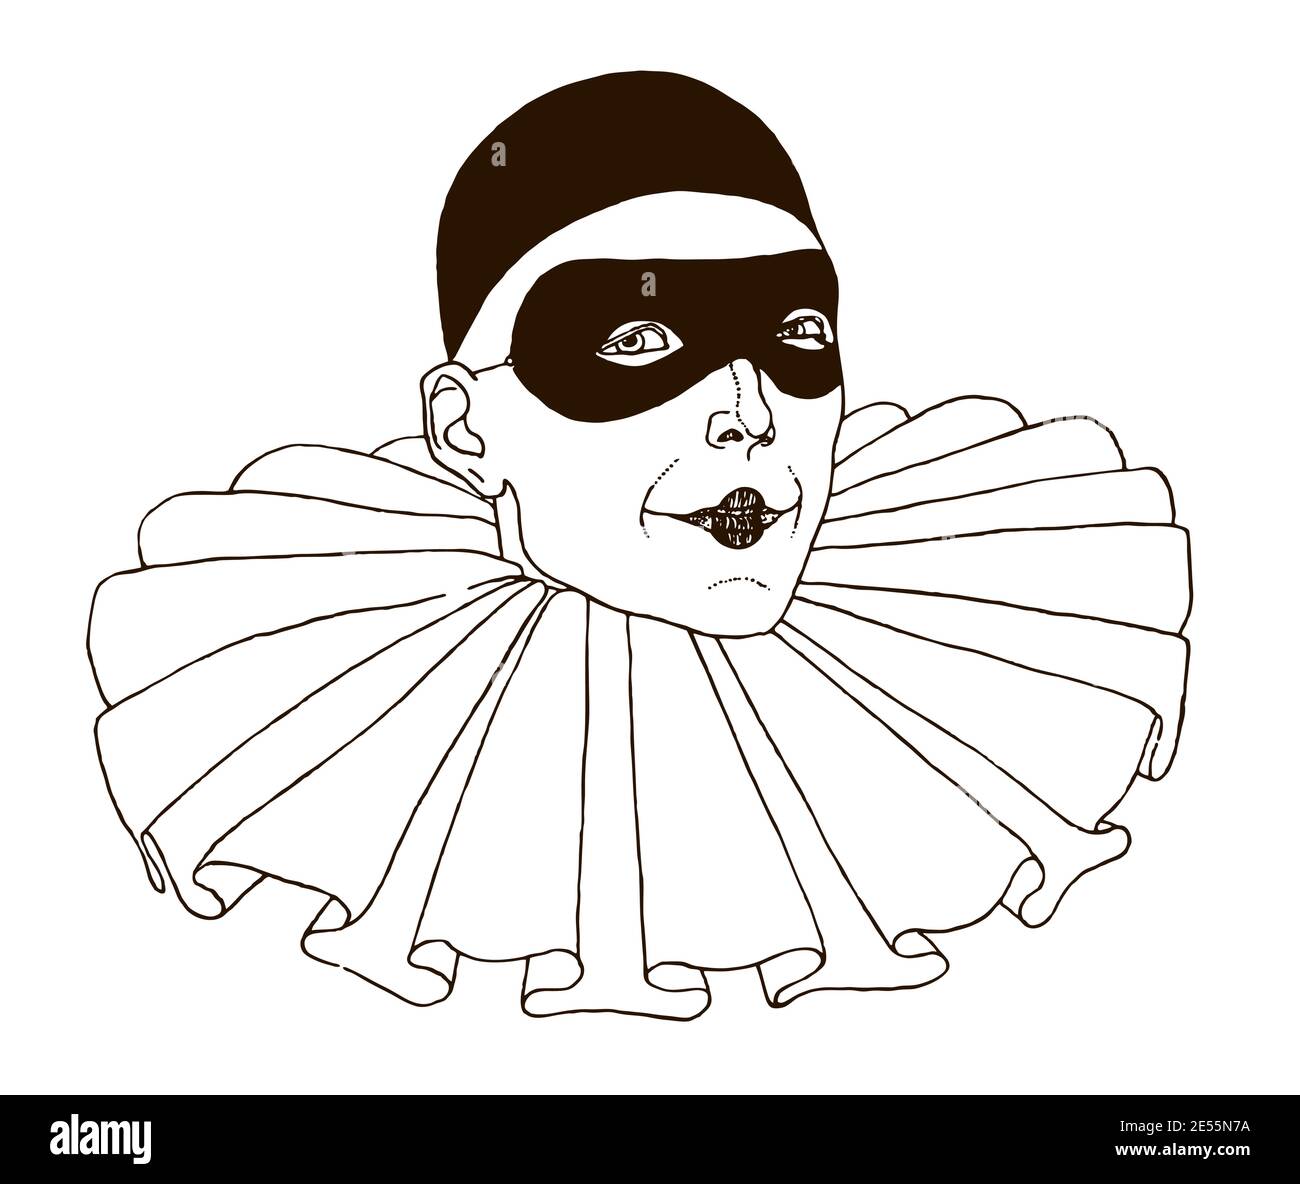 Tête de Pierrot, port de la calotte crânienne, masque oculaire et col à volants. Illustration après un dessin des années 20 Illustration de Vecteur